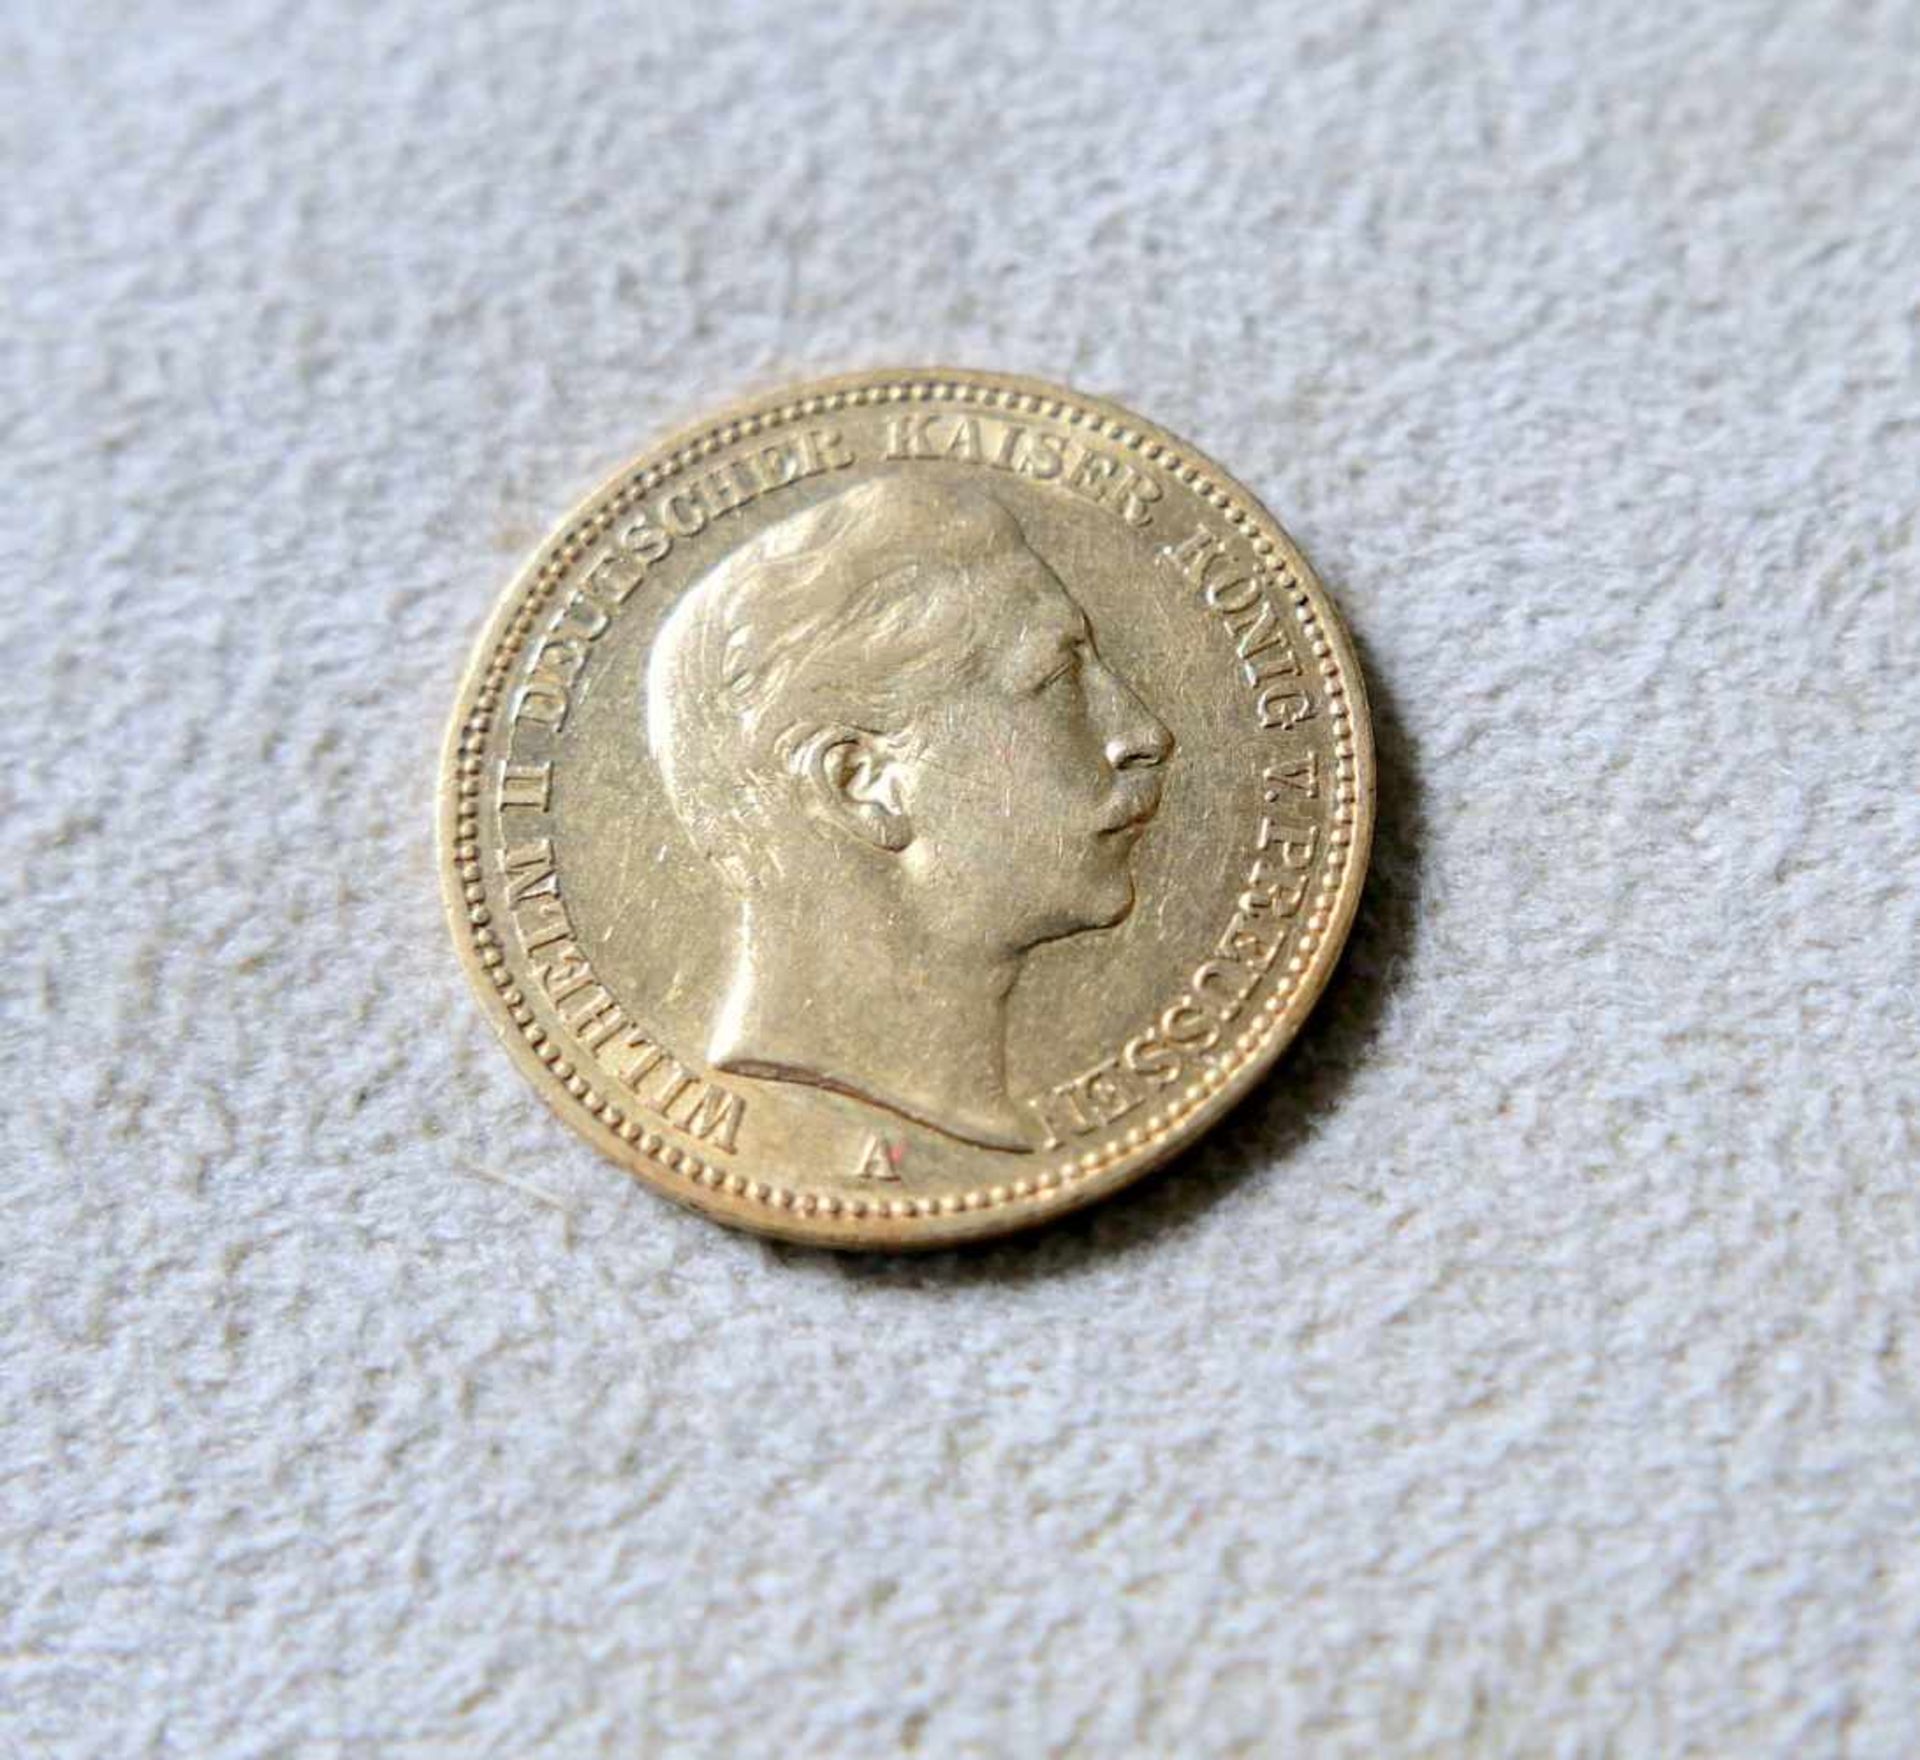 Goldmünze, 20 Reichsmark Kaiser Wilhelm II. von PreußenGold. 20 Reichsmark Kaiser Wilhelm II. von